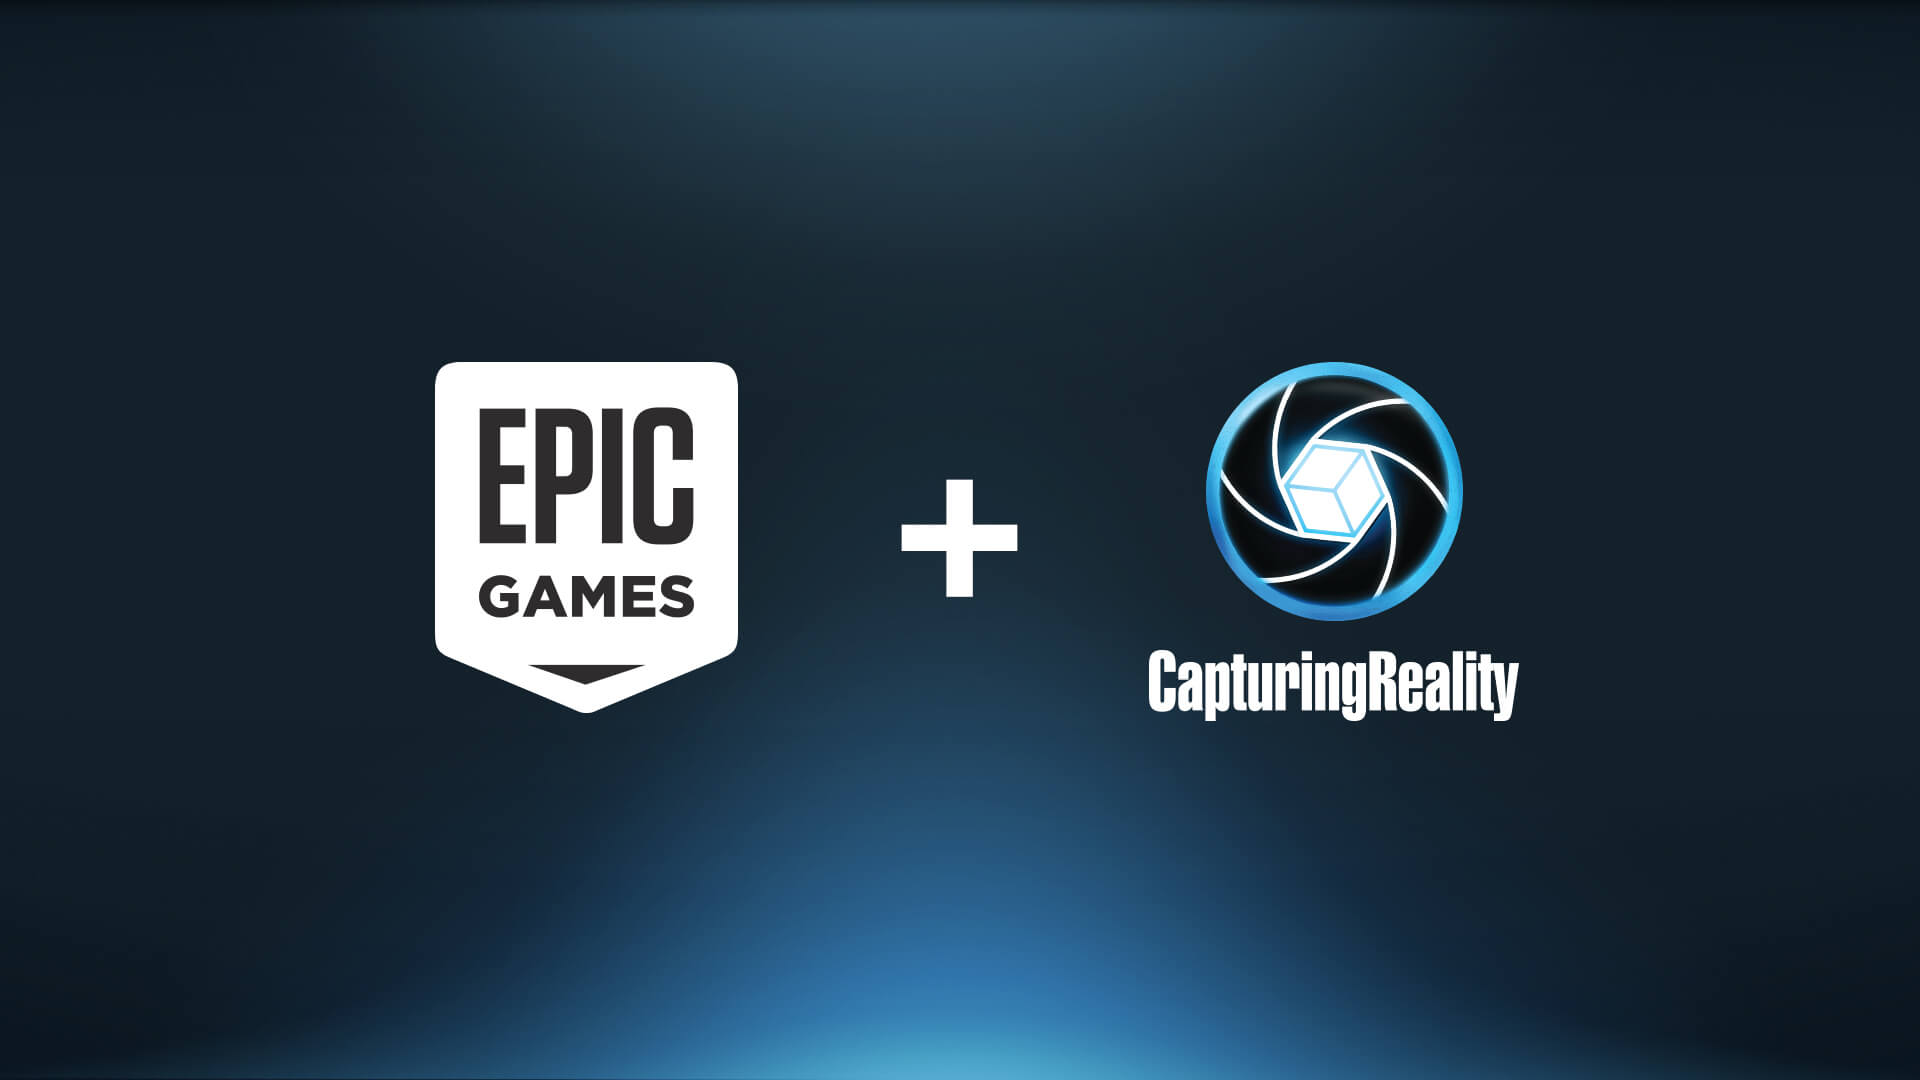 Epic acquiert Capturing Reality, spécialiste du scan 3D, pour l'intégrer à l'écosystème Unreal Engine